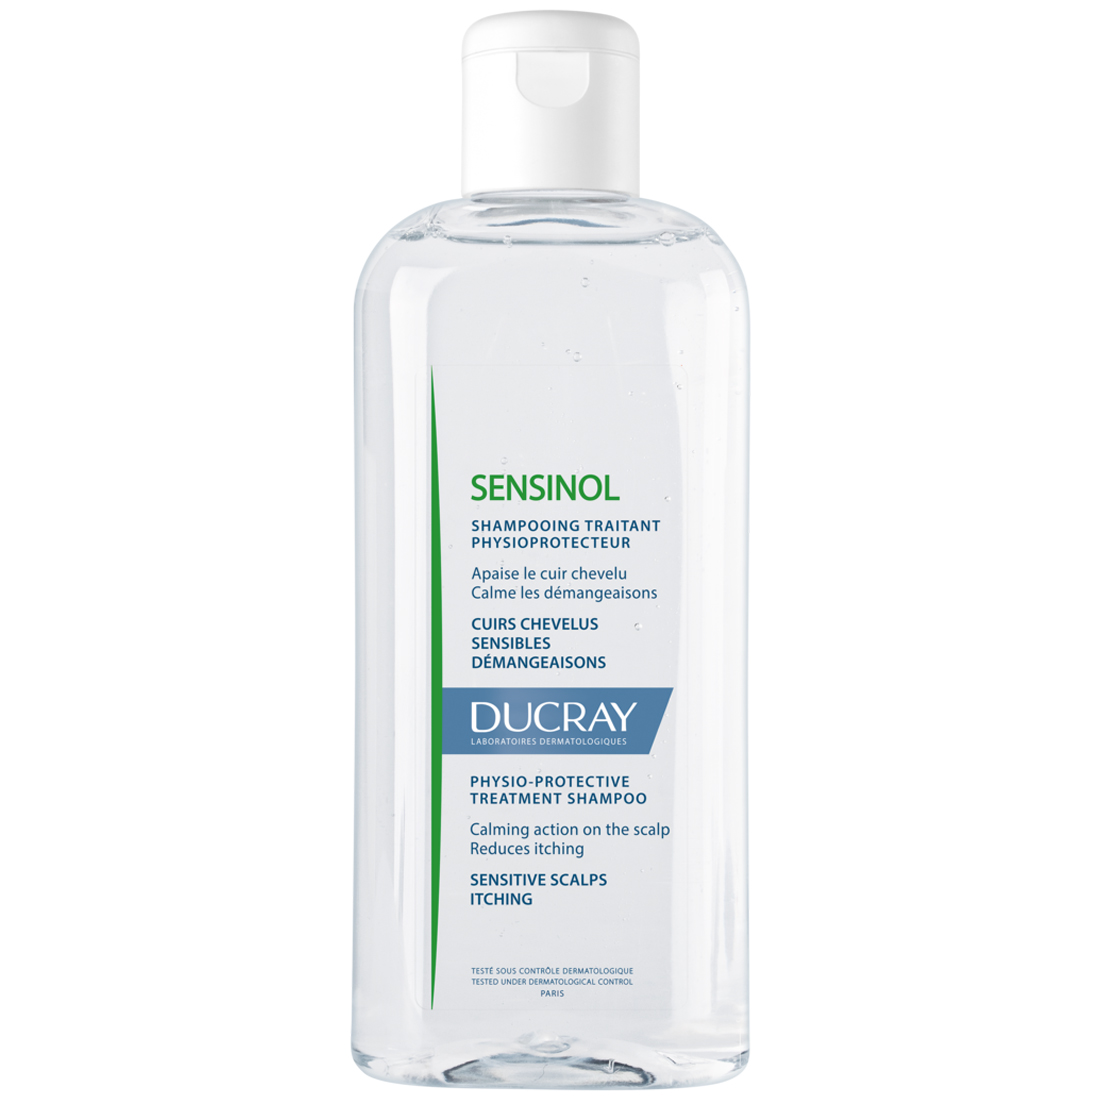 цена Ducray Физиологический защитный шампунь для чувствительной кожи, 200 мл (Ducray, Sensinol)